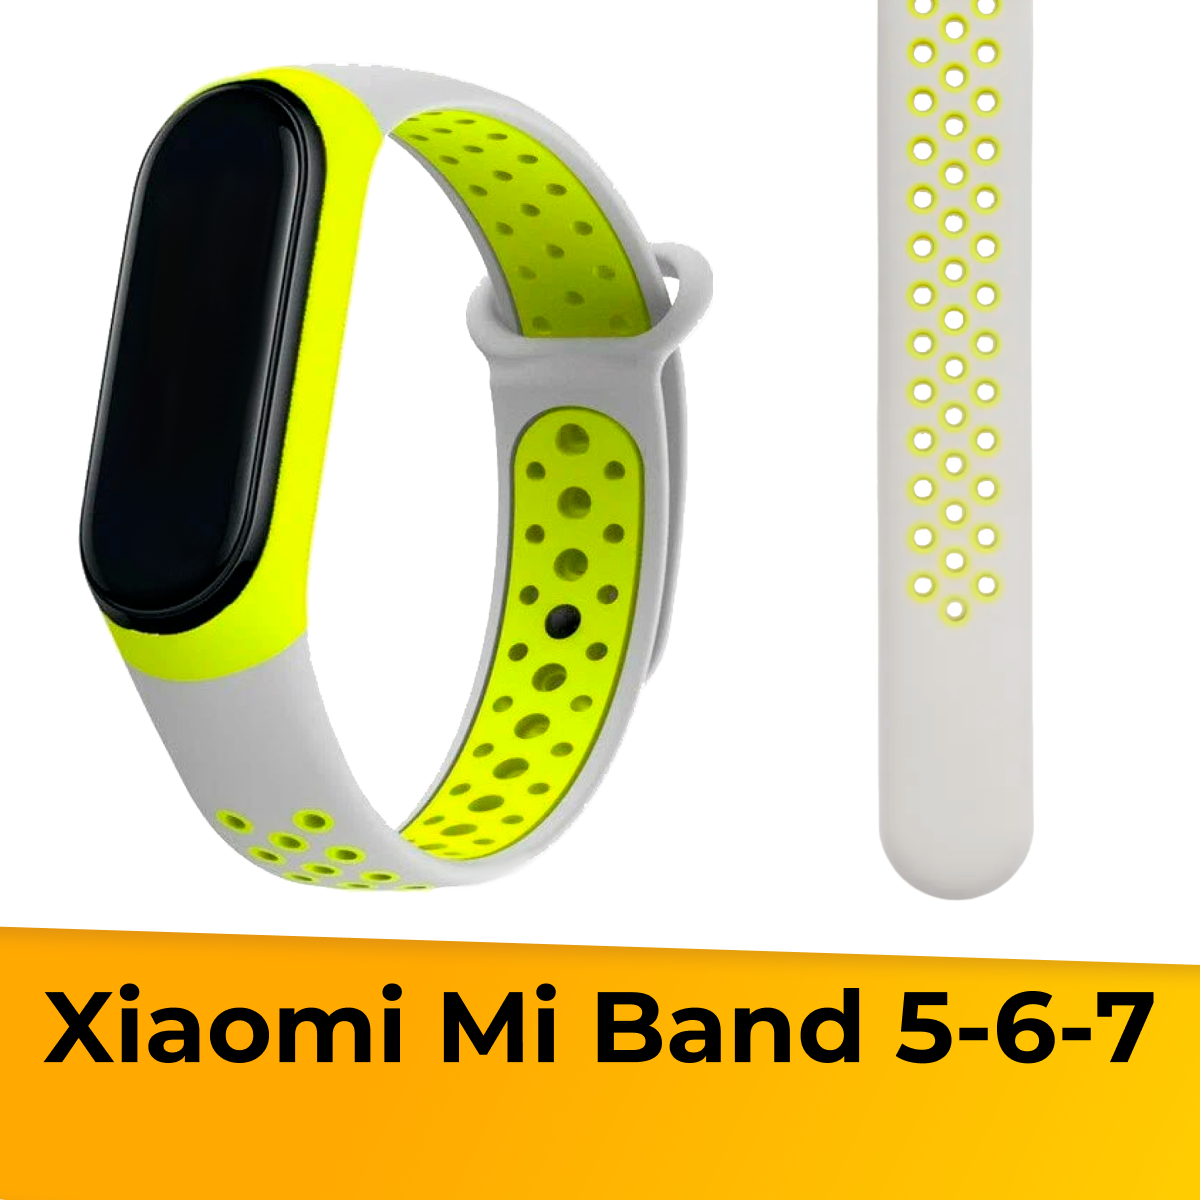 Силиконовый ремешок с перфорацией для Xiaomi Mi Band 5, 6 и 7 / Сменный спортивный браслет на смарт часы Сяоми Ми Бэнд 5, 6 и 7 / Серо-желтый